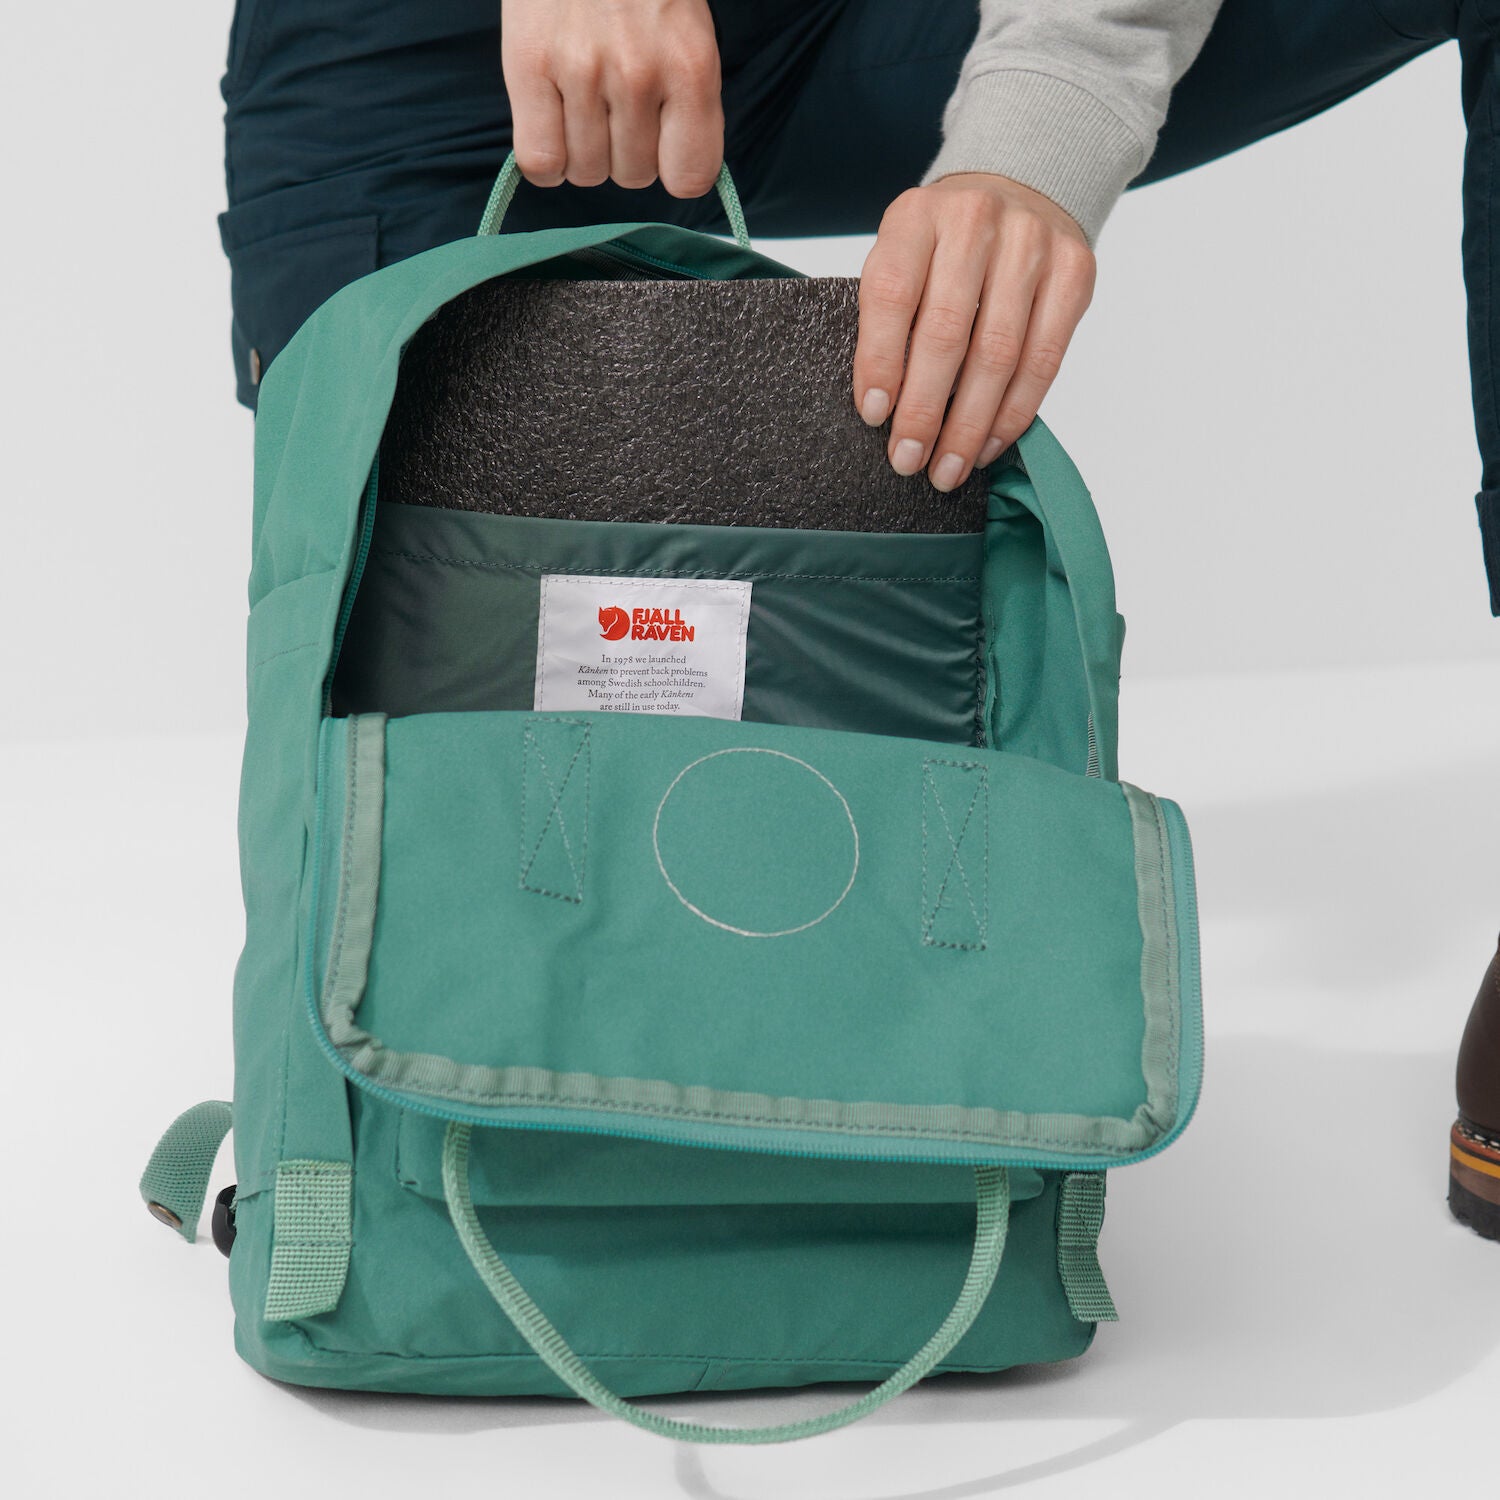 what's inside of a kanken backpack?